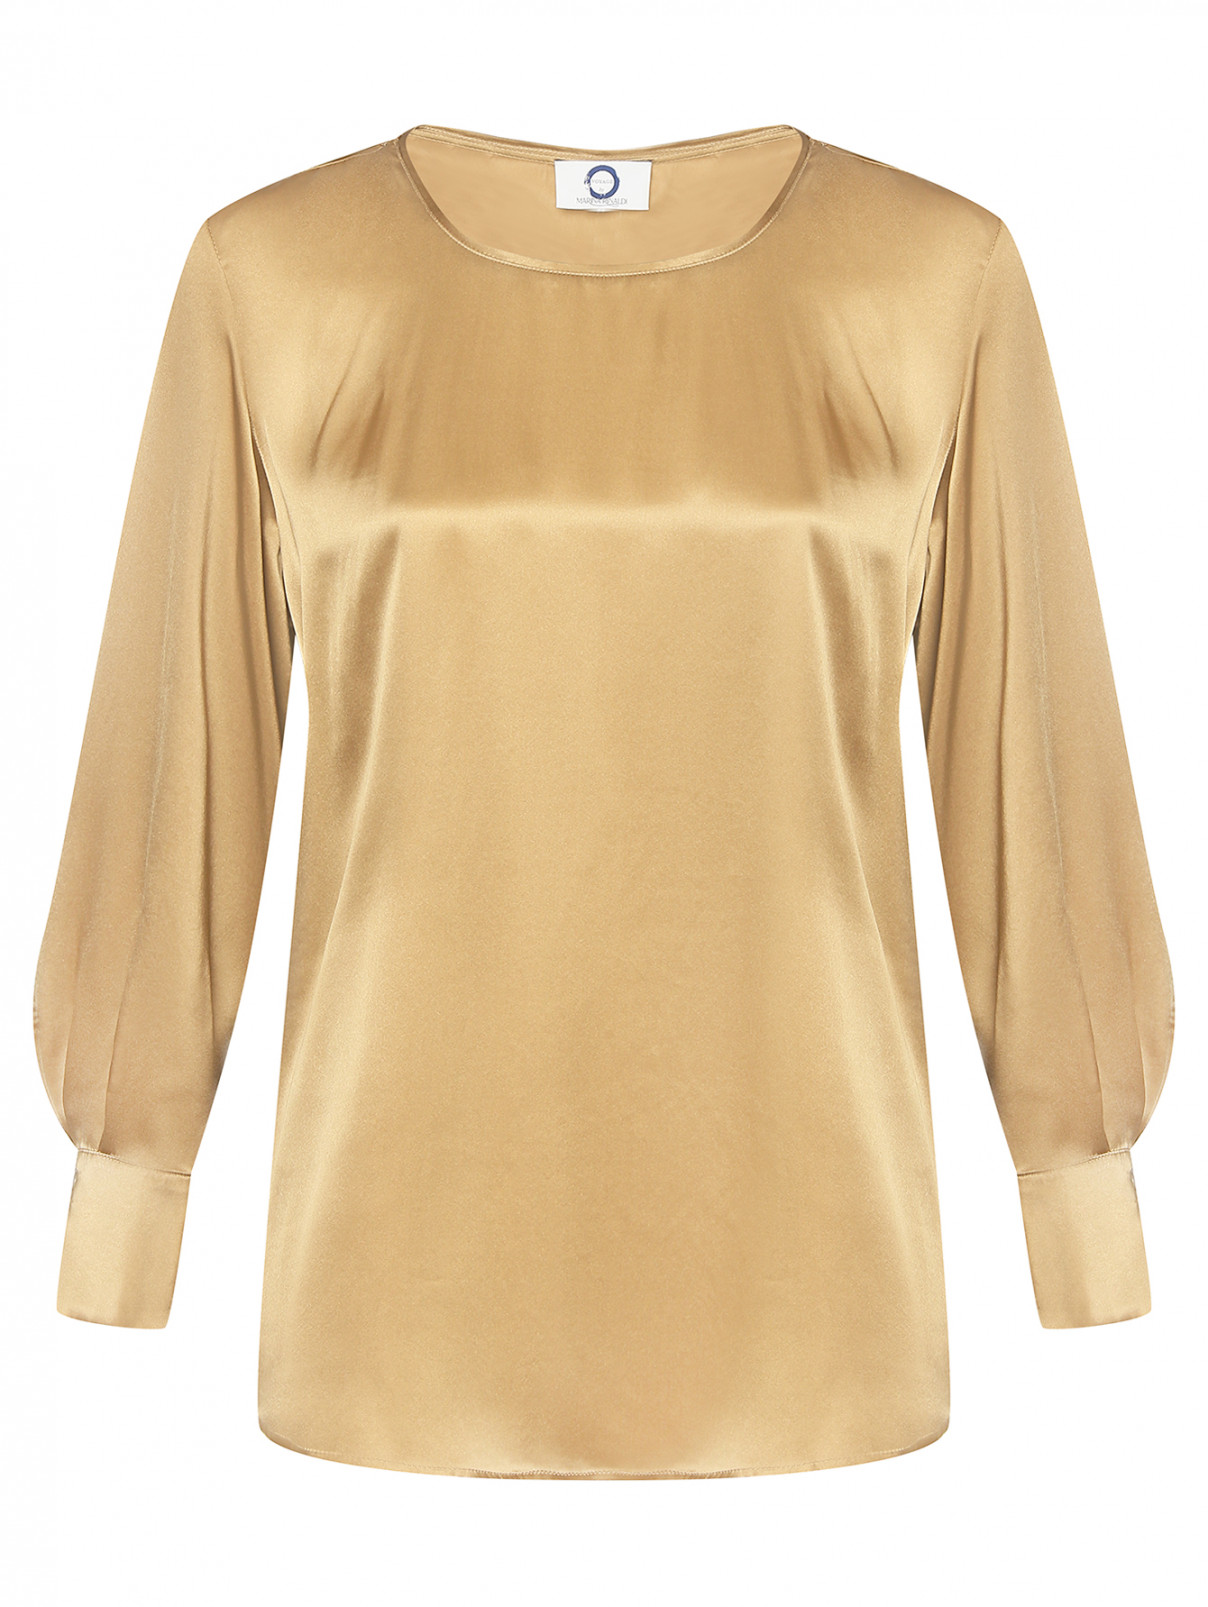 Блуза из шелка с длинным рукавом Marina Rinaldi  –  Общий вид  – Цвет:  Золотой